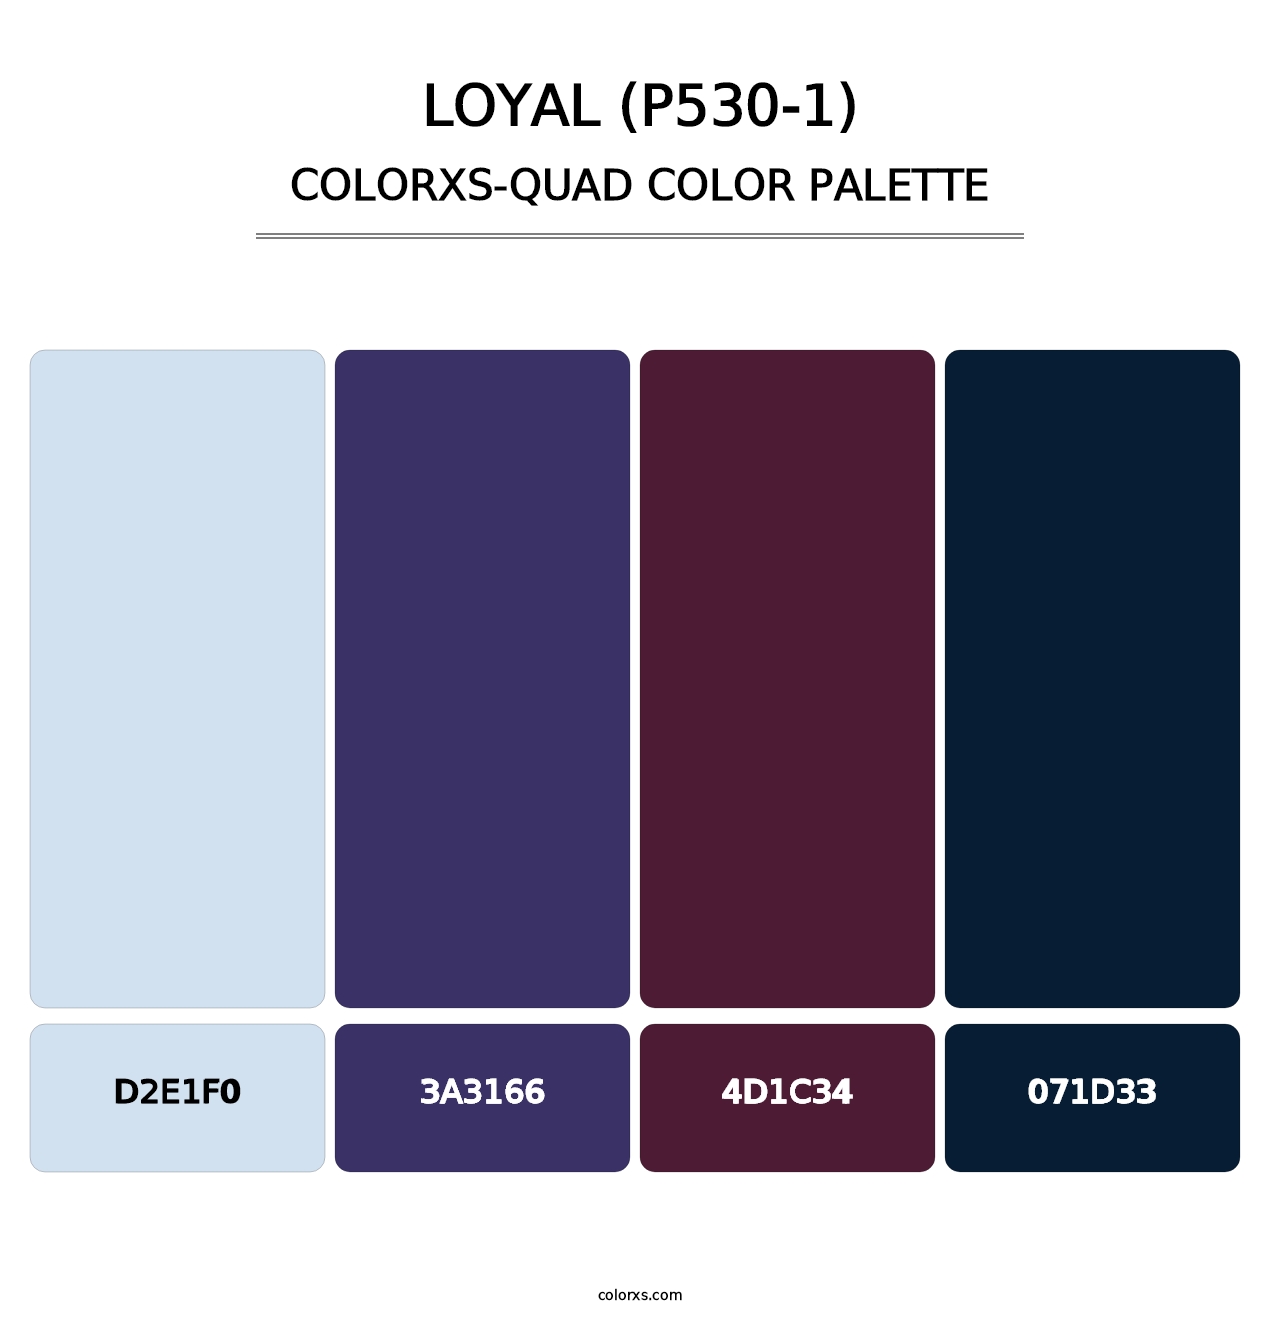 Loyal (P530-1) - Colorxs Quad Palette